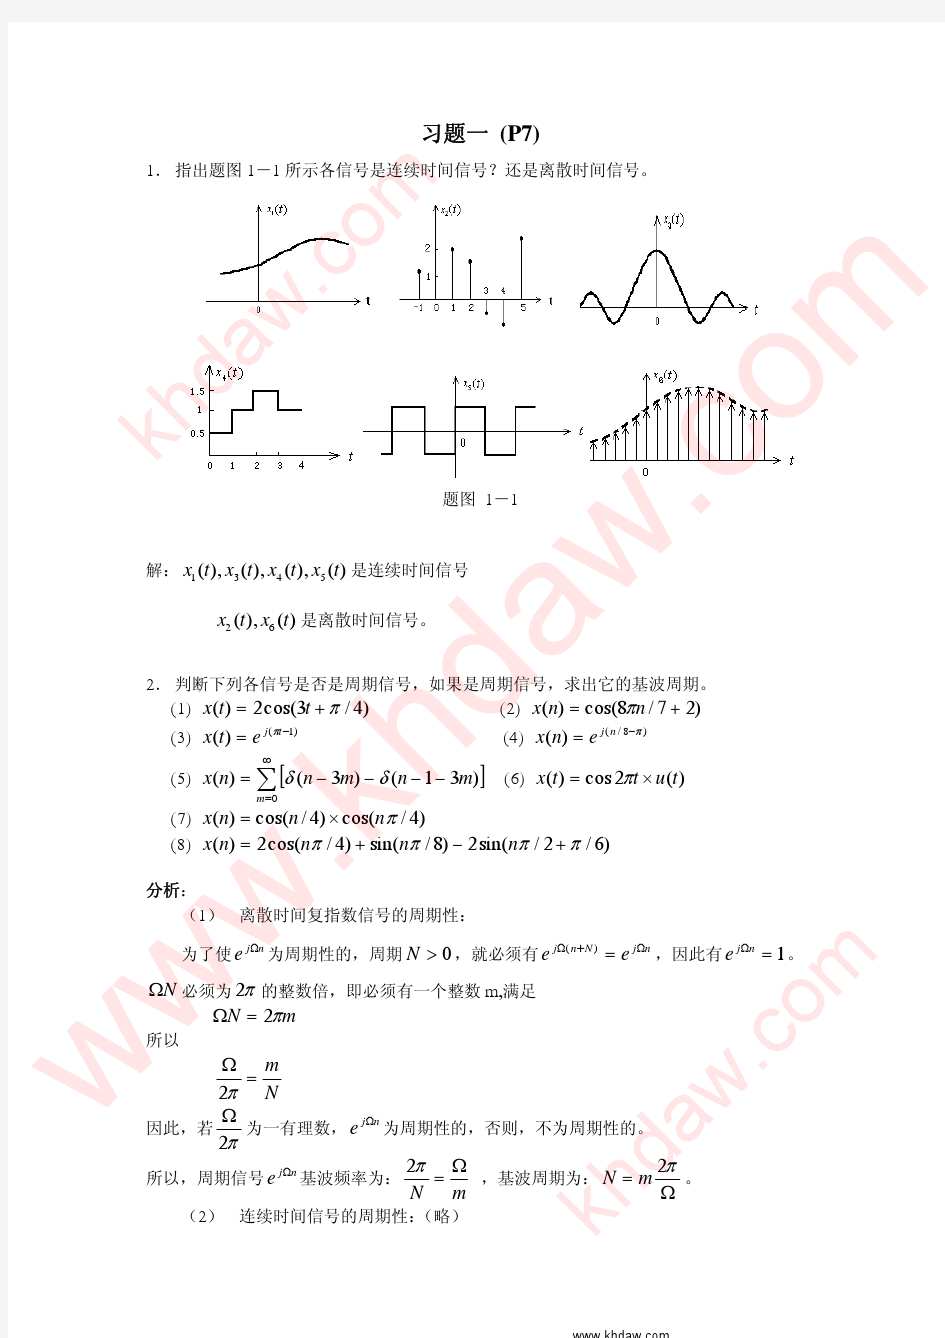 信号分析与处理 第二版 (赵光宙 著)_khdaw